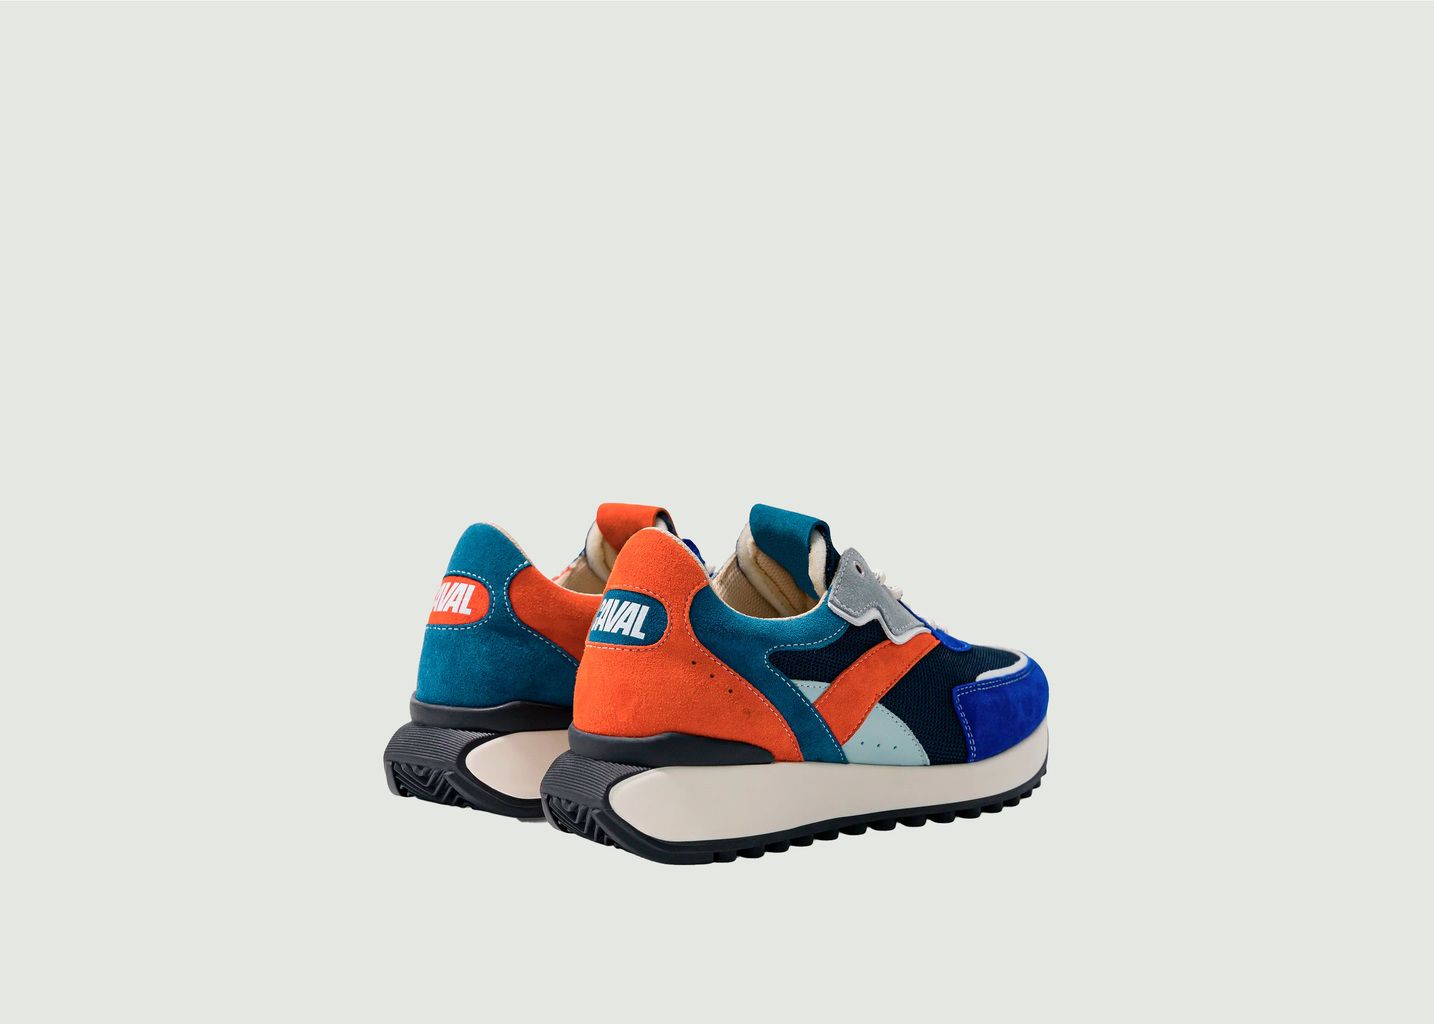 Electrik Tangerine Sneakers - Caval